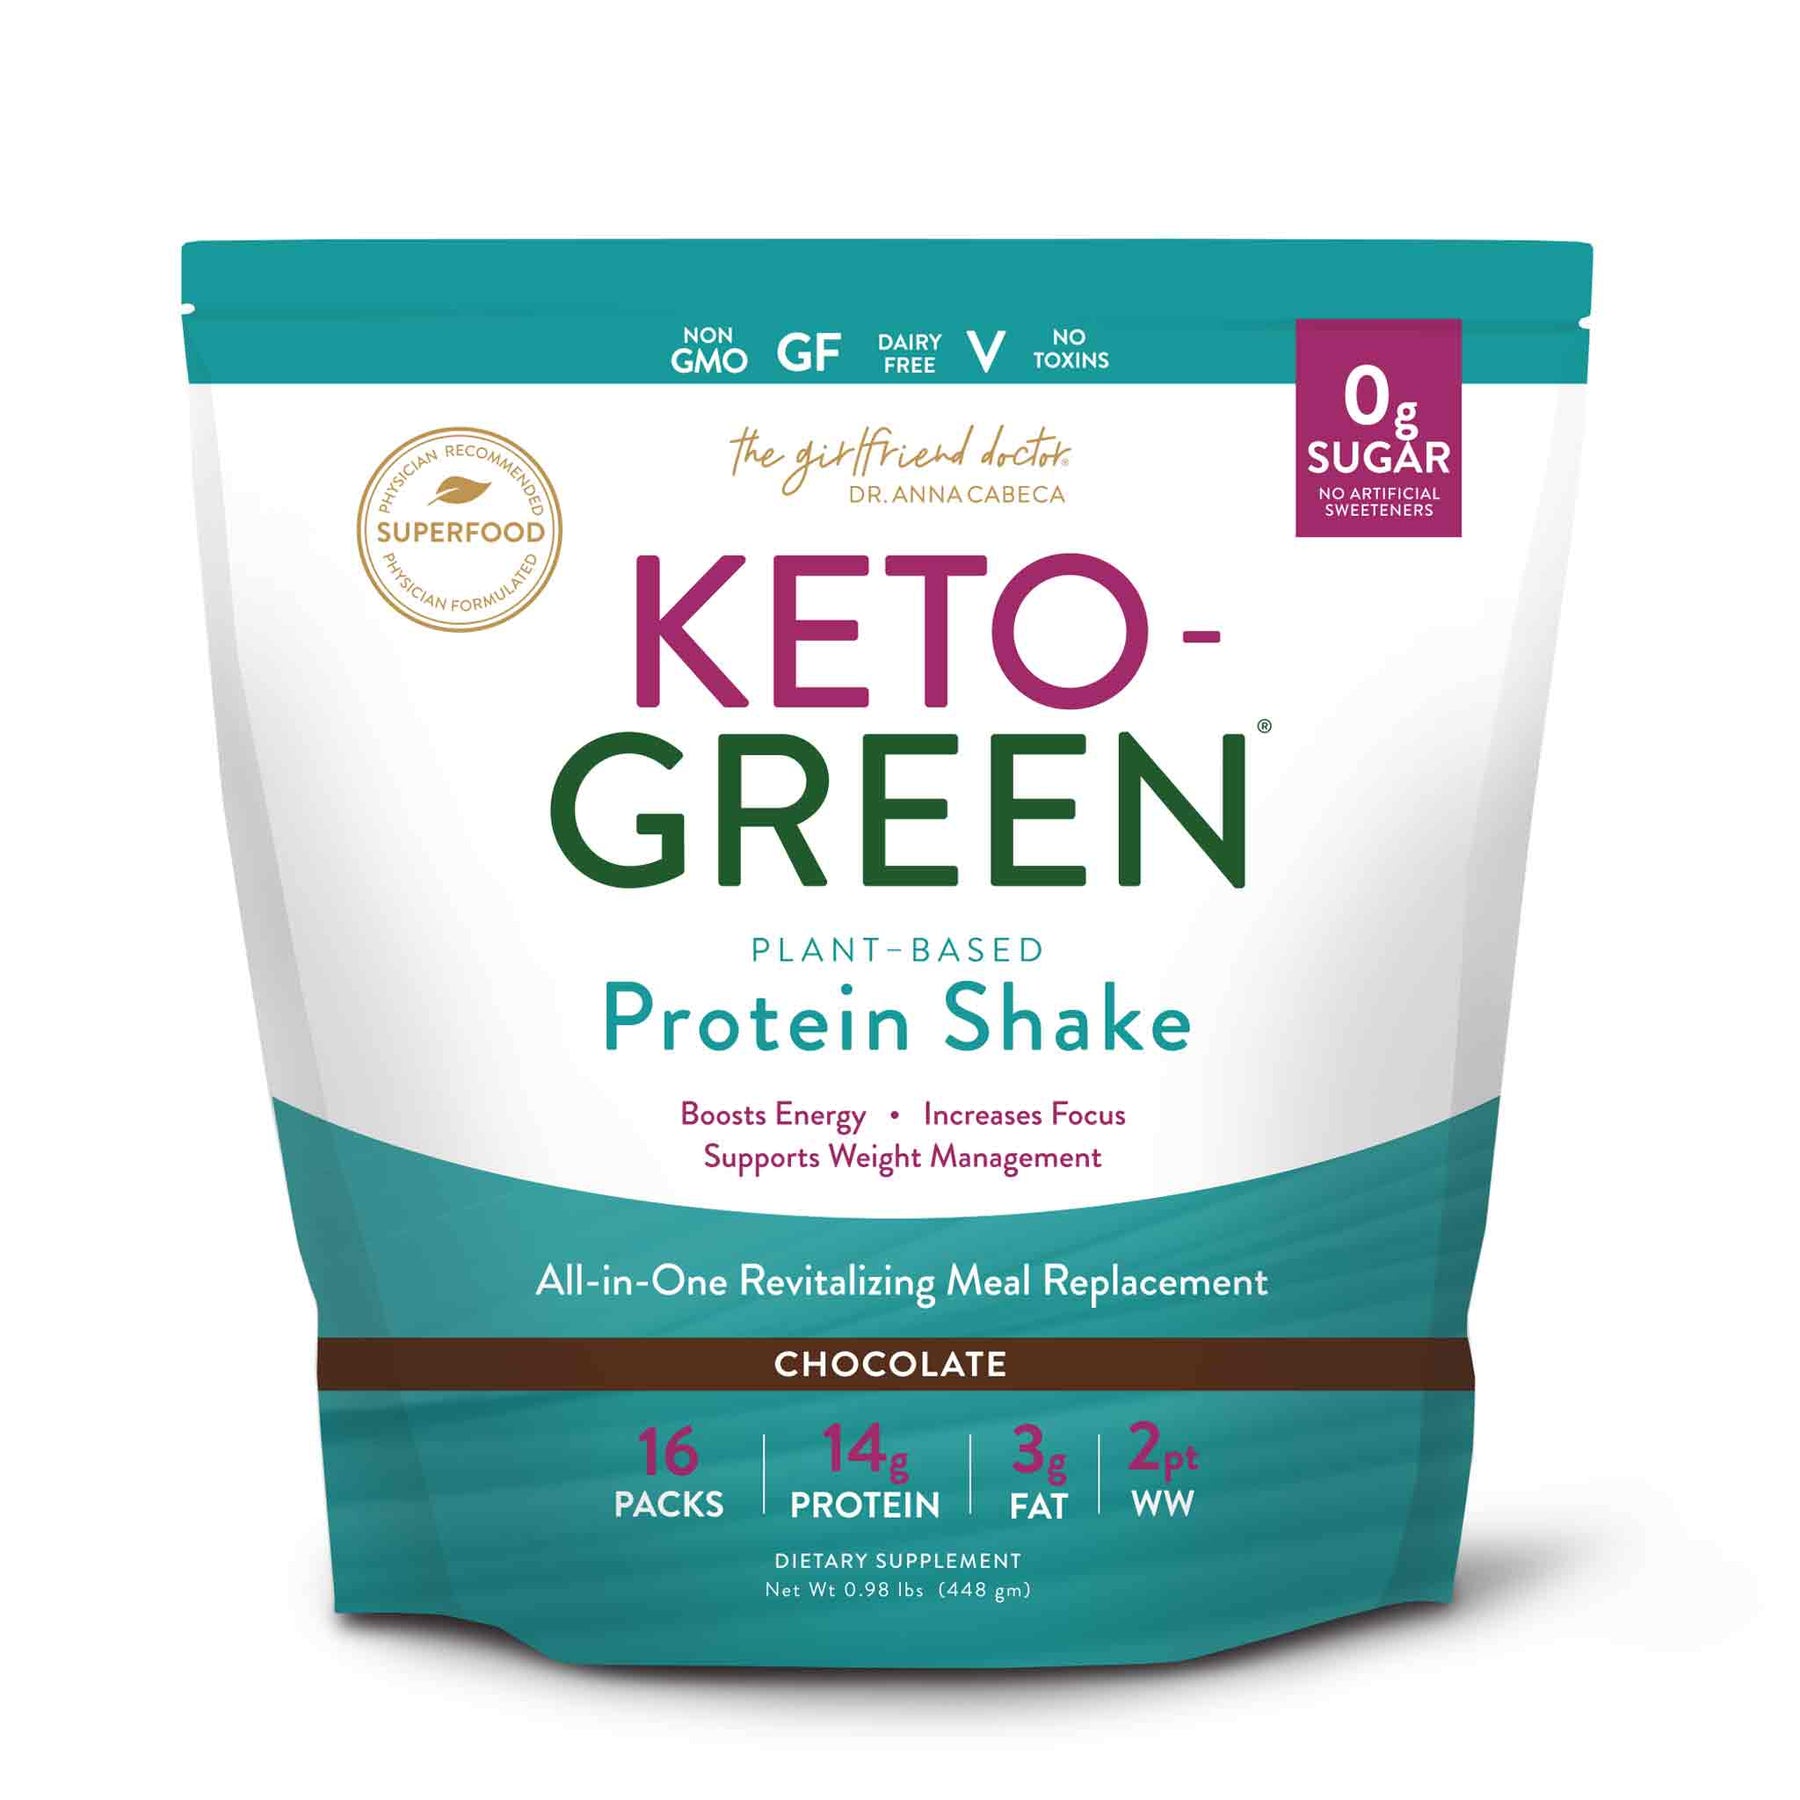 Keto-Greens